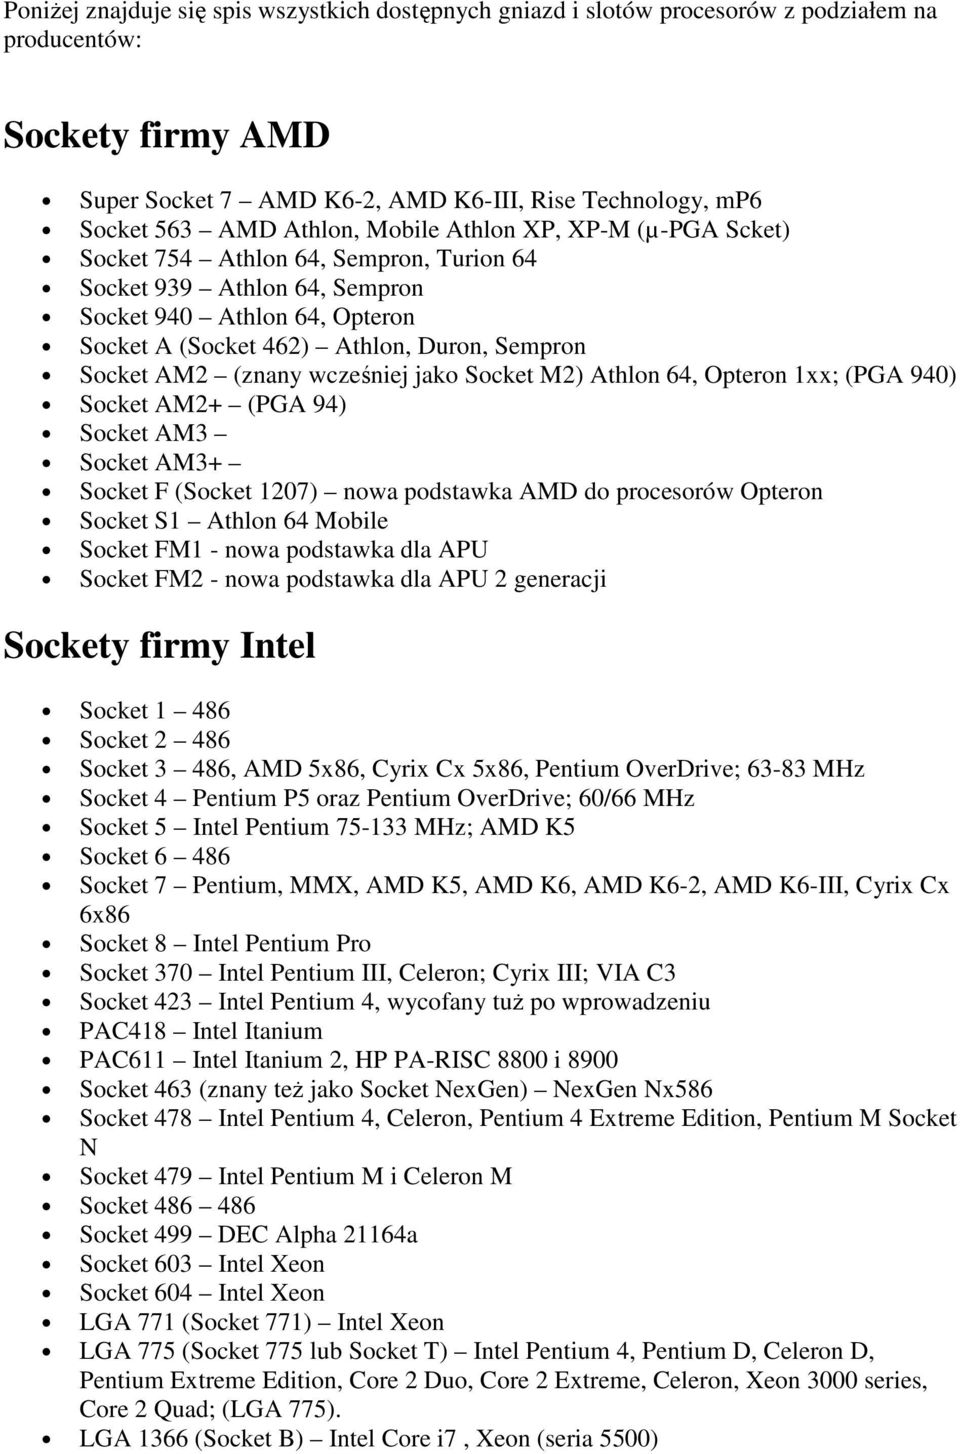 AM2 (znany wcześniej jako Socket M2) Athlon 64, Opteron 1xx; (PGA 940) Socket AM2+ (PGA 94) Socket AM3 Socket AM3+ Socket F (Socket 1207) nowa podstawka AMD do procesorów Opteron Socket S1 Athlon 64